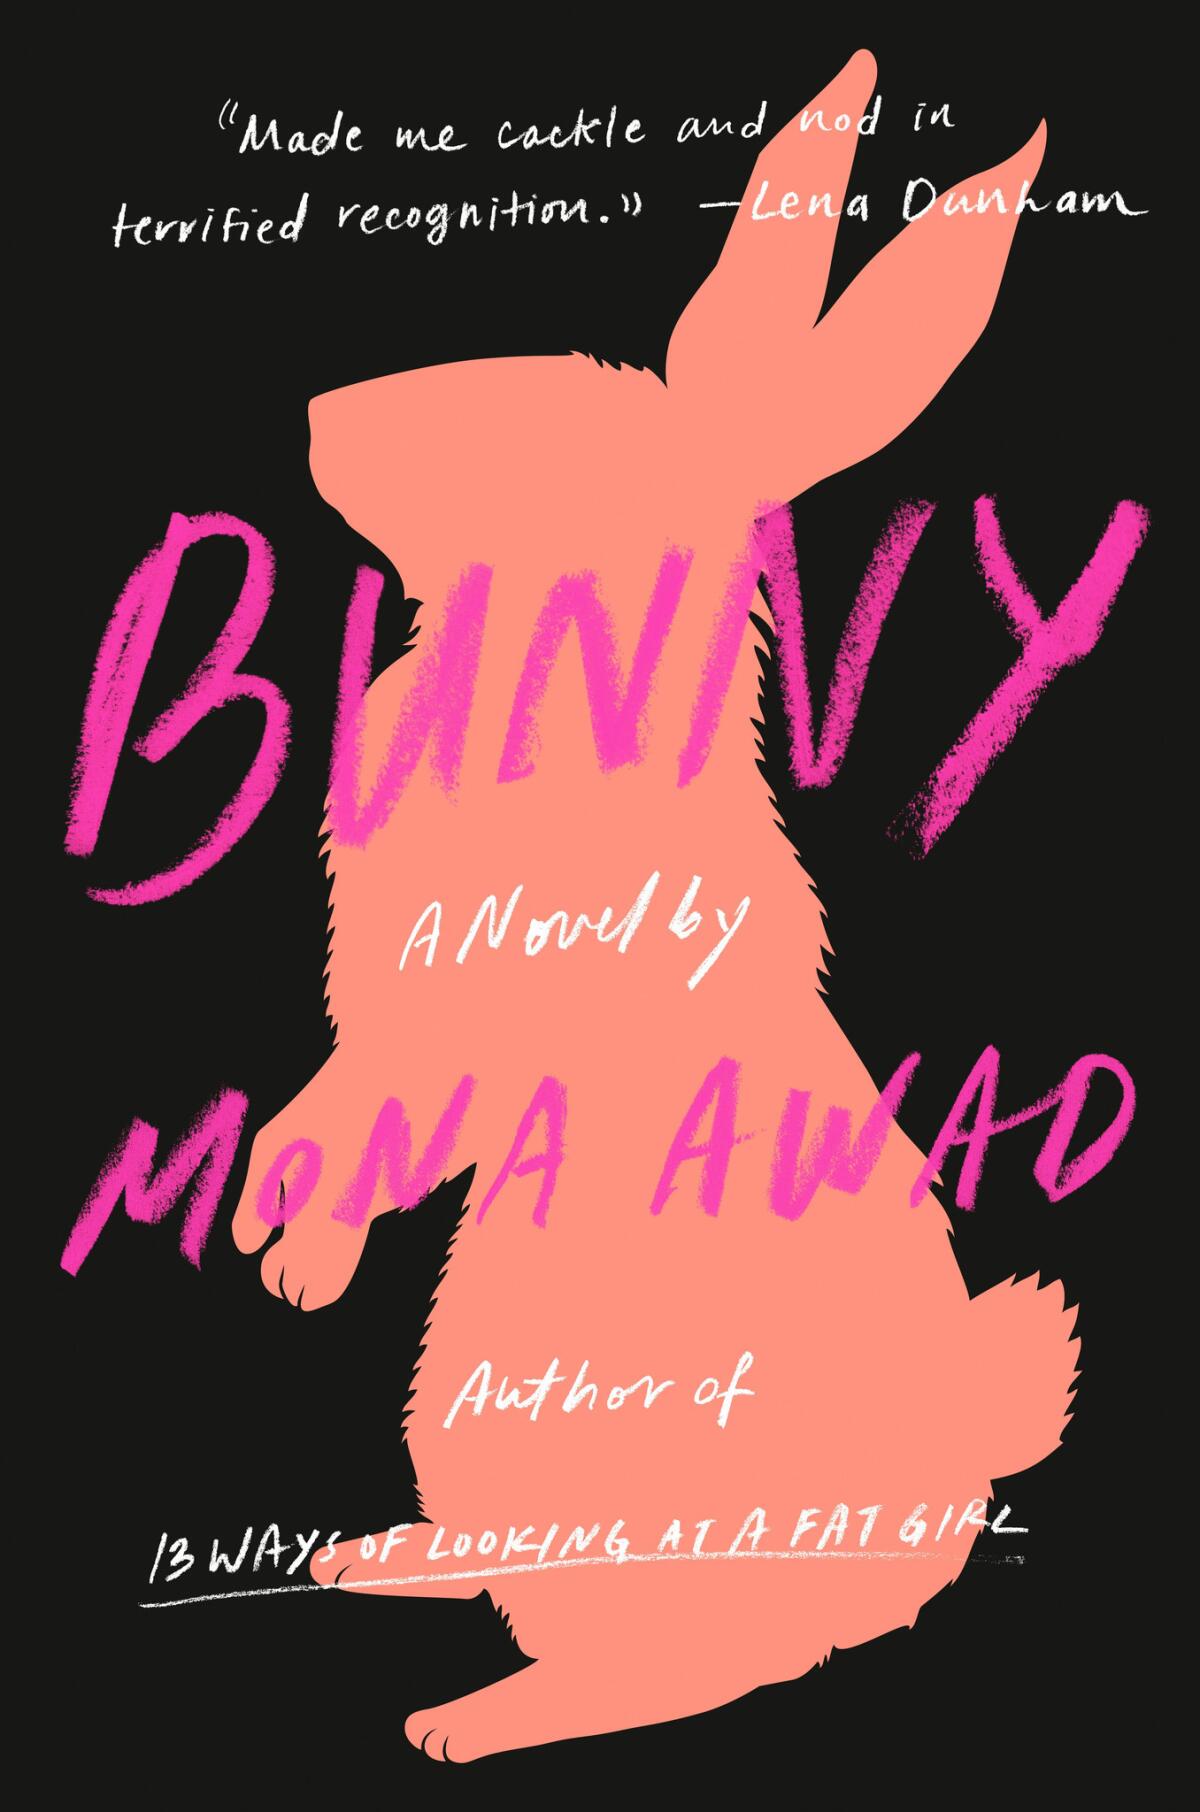 "Bunny" by Mona Awad.